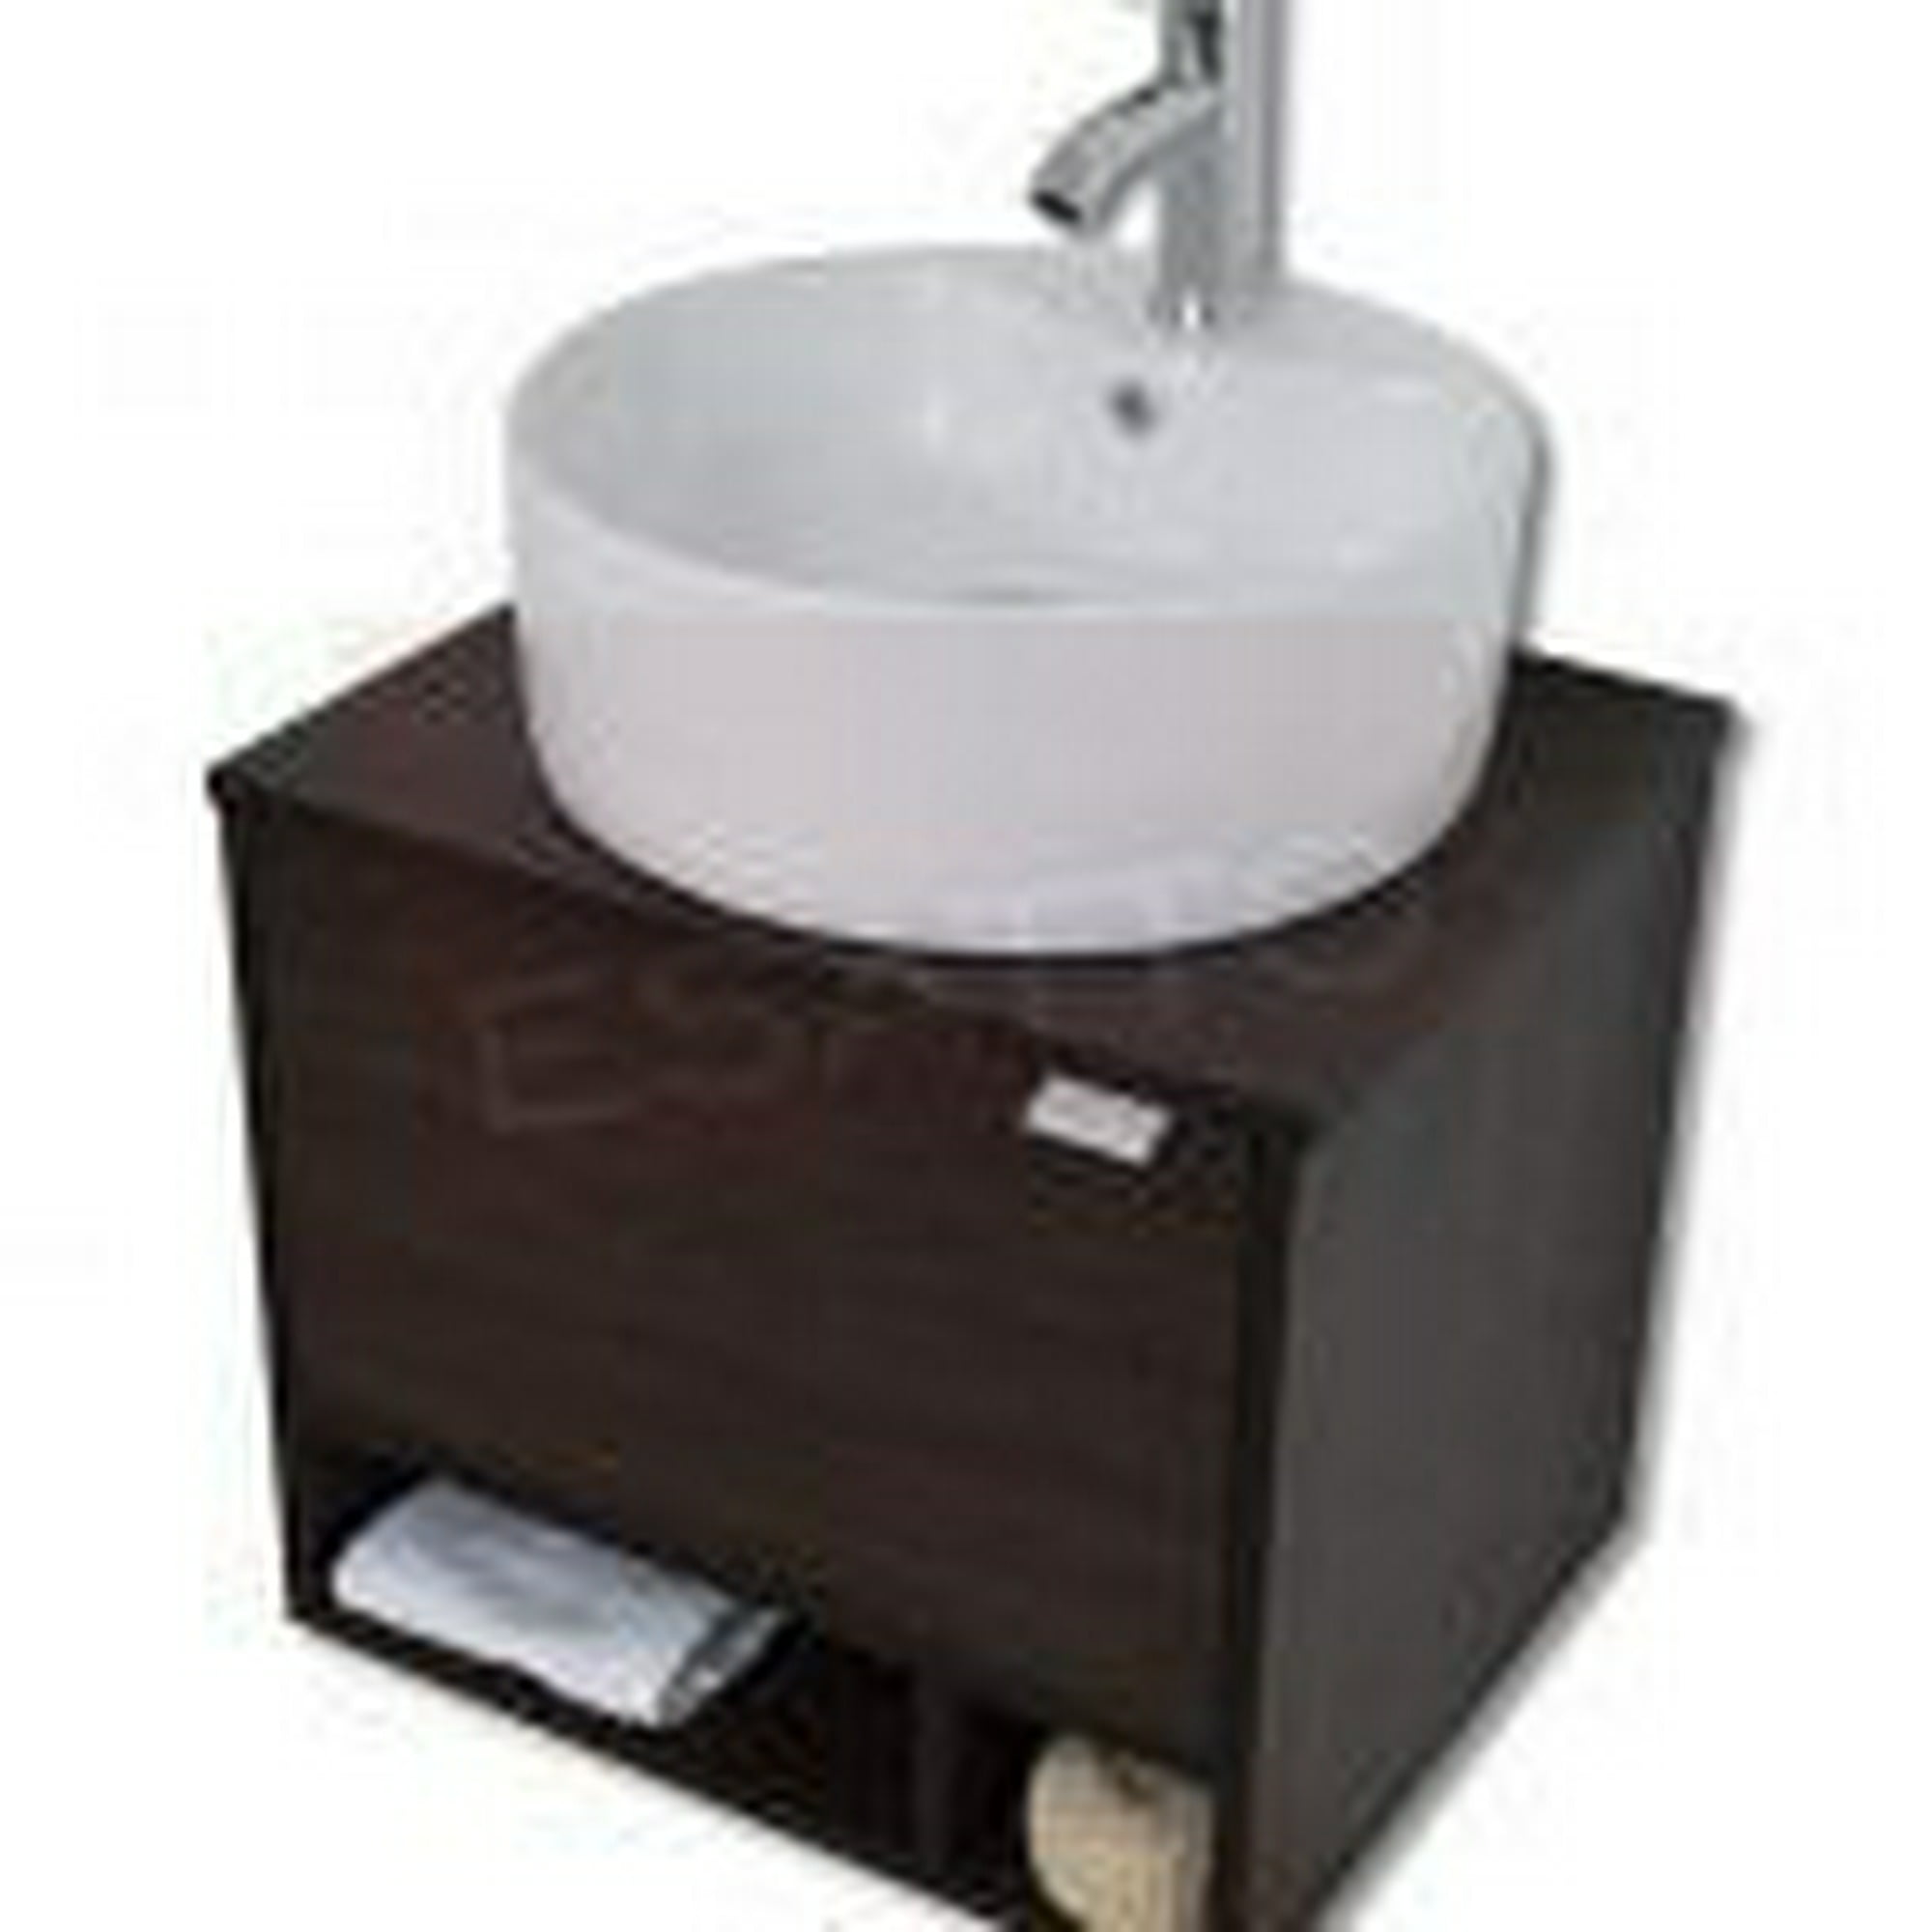 Esatto® mueble para baño dcta rondo con lavabo, llave y desagües esatto dcta rondo